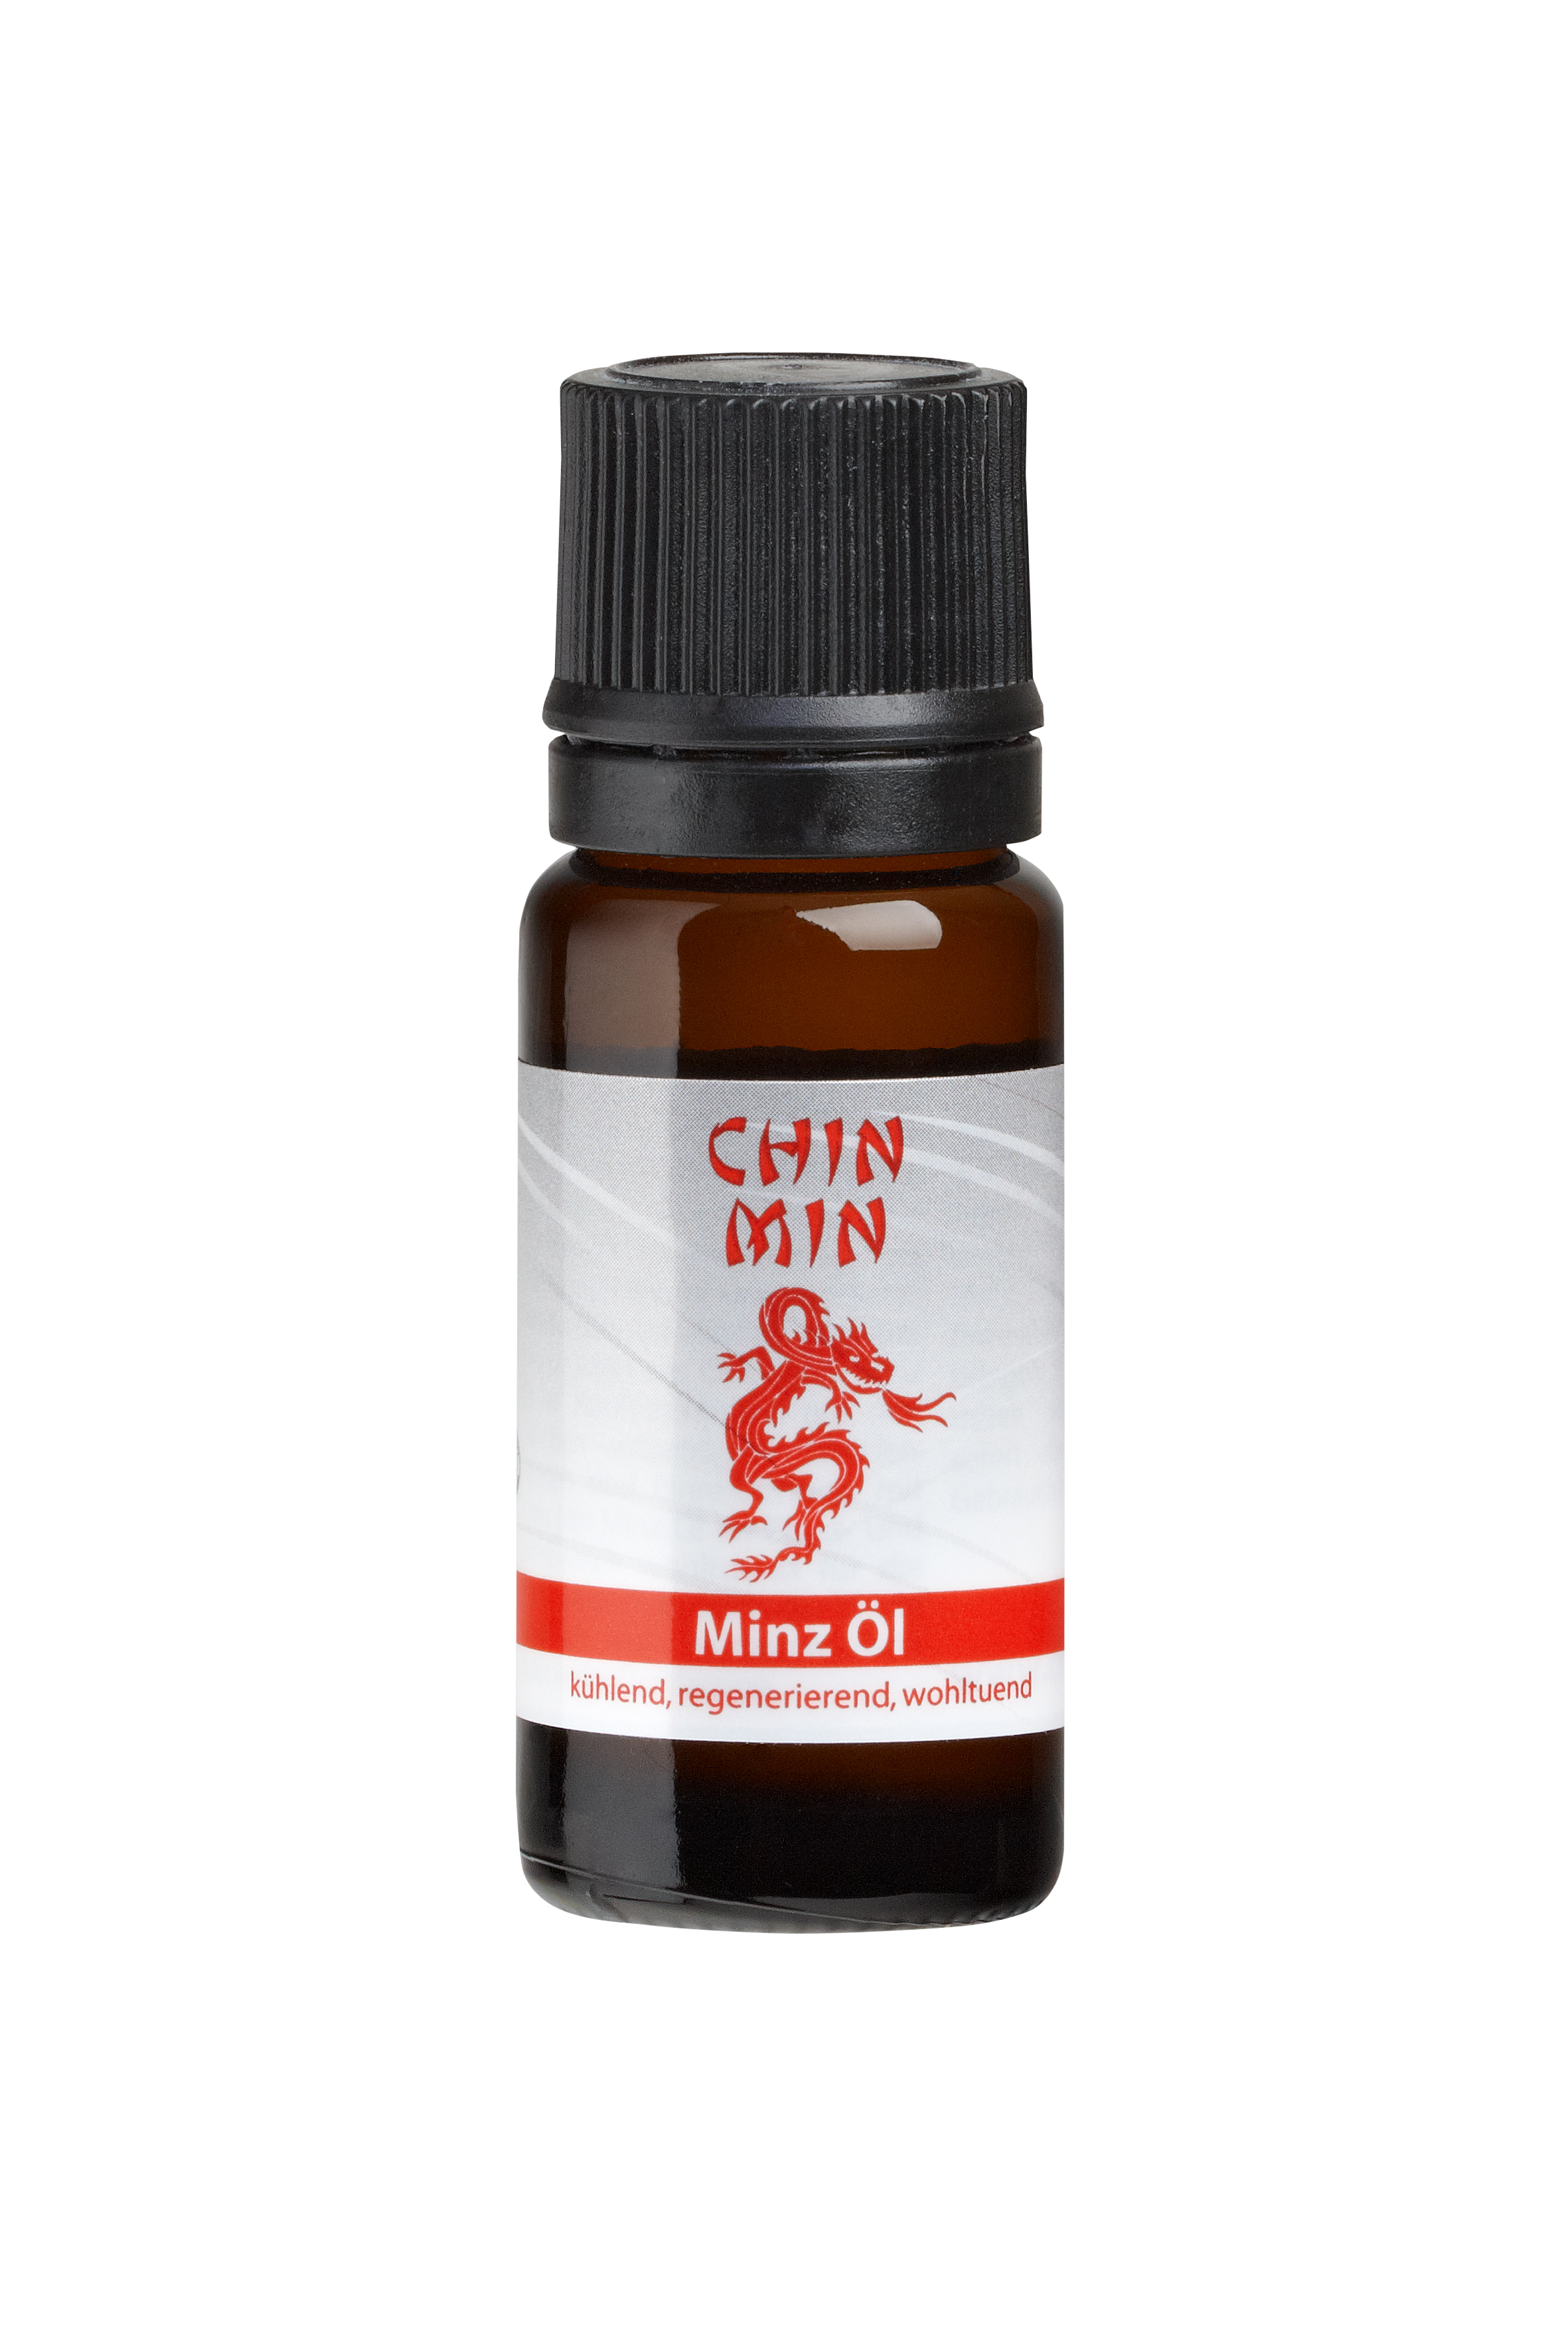 Chin Min Öl 10ml